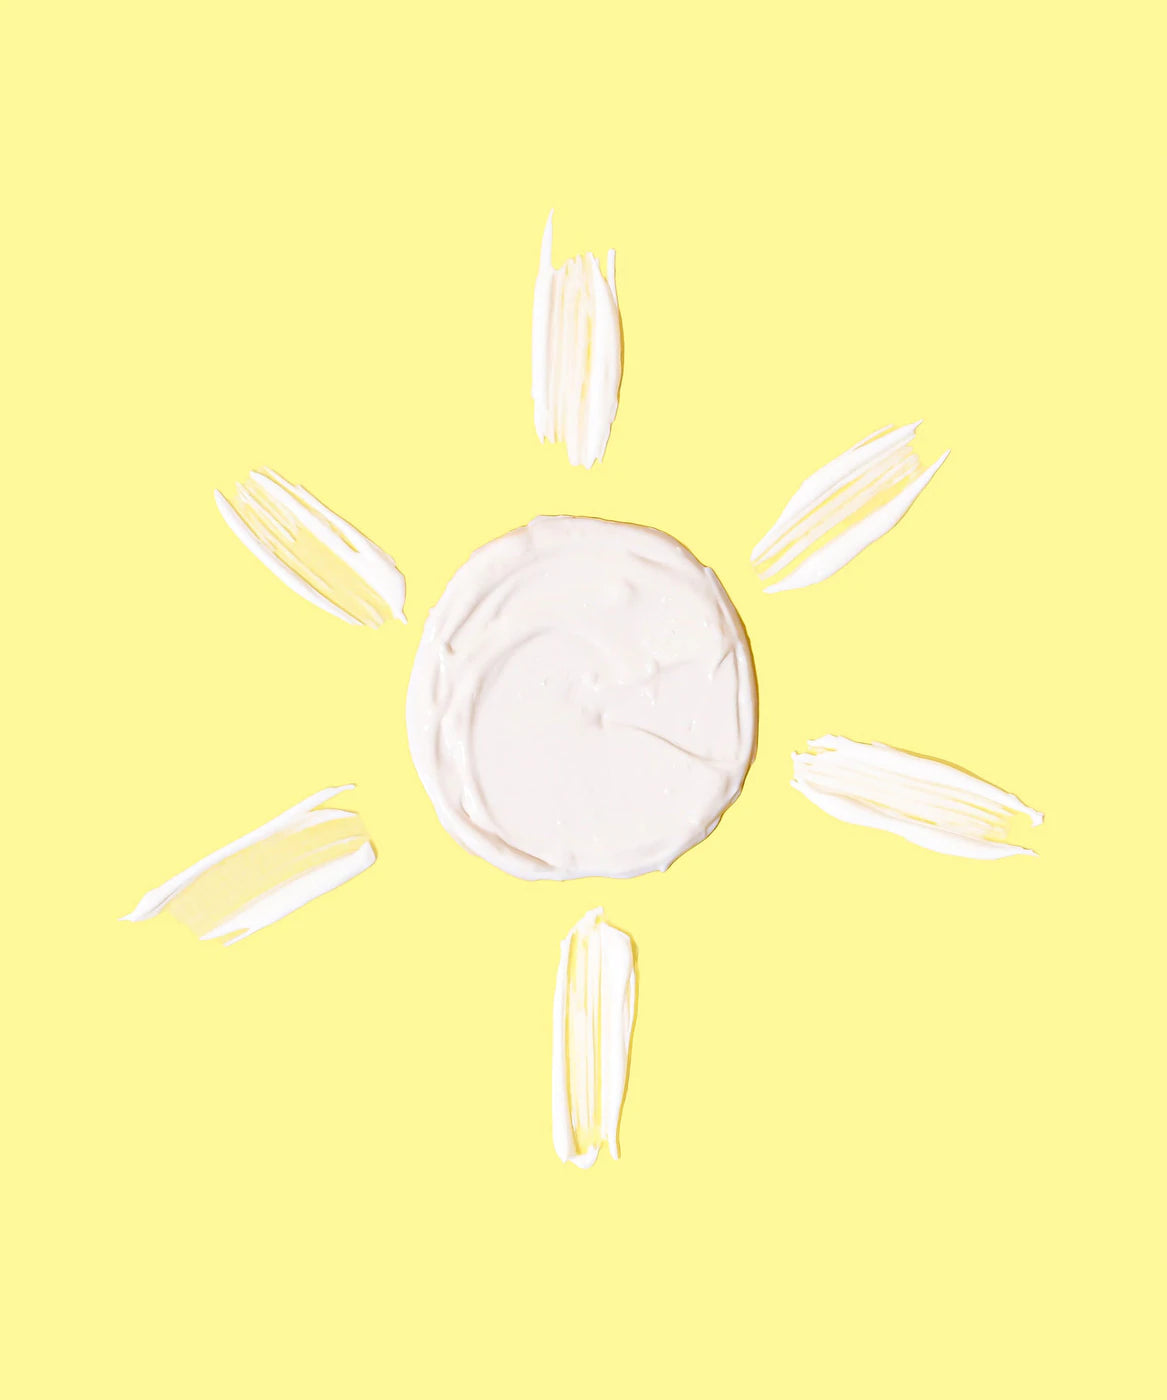 Sun Bum Daily Sunscreen Moisturizer SPF 30